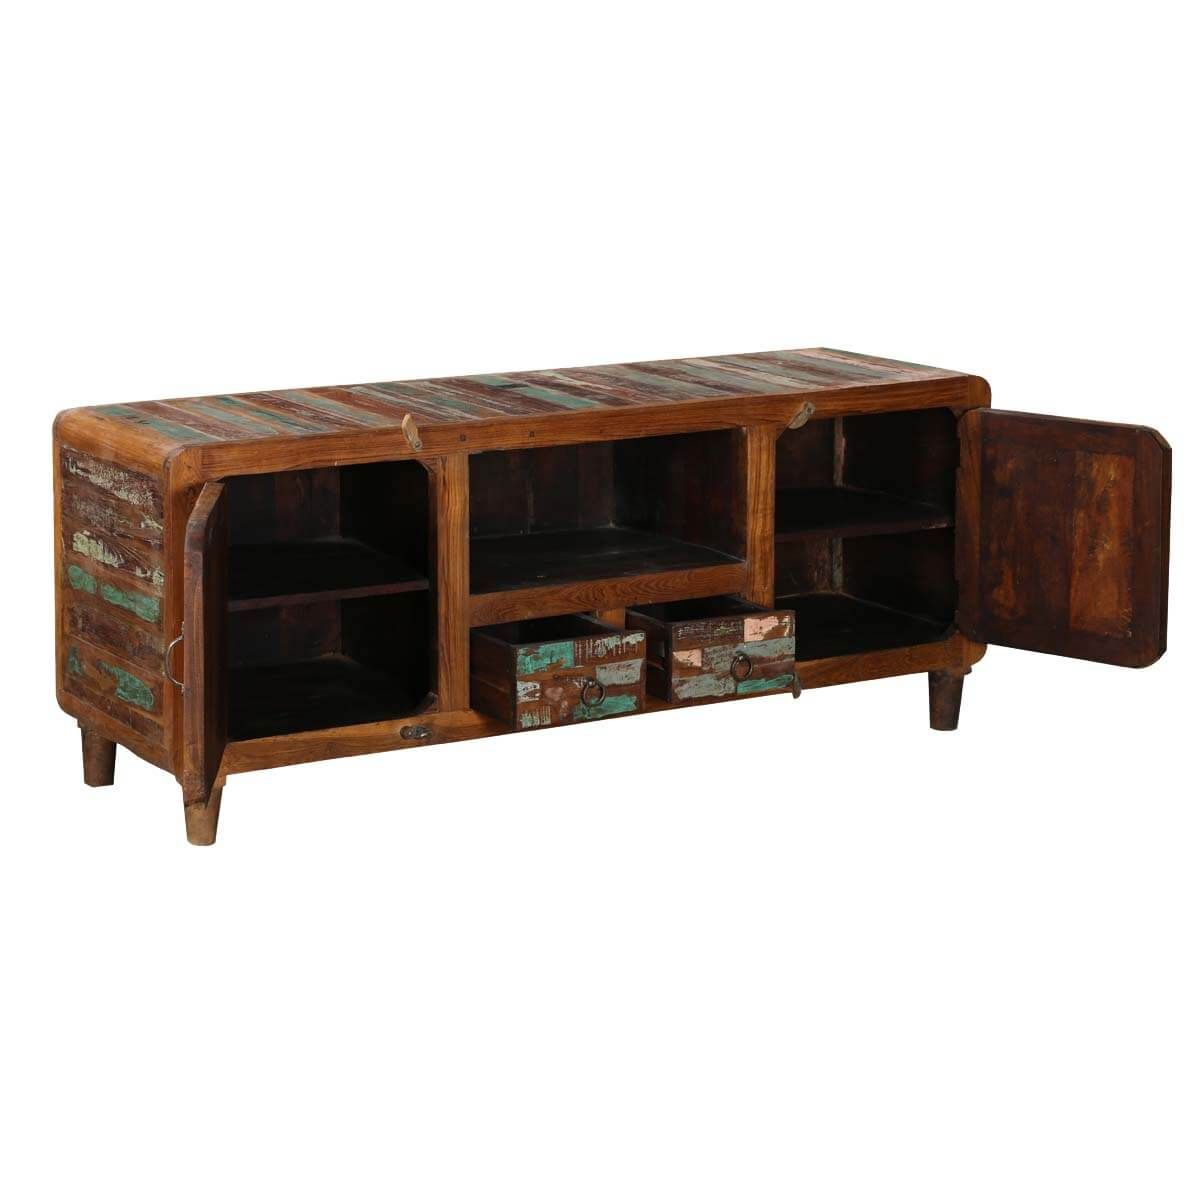 Tangier 59" Mosaic 2 Door Solid Wood Rustic Media Console Furniture With Regard To 2 Door Wood Desks (View 7 of 15)